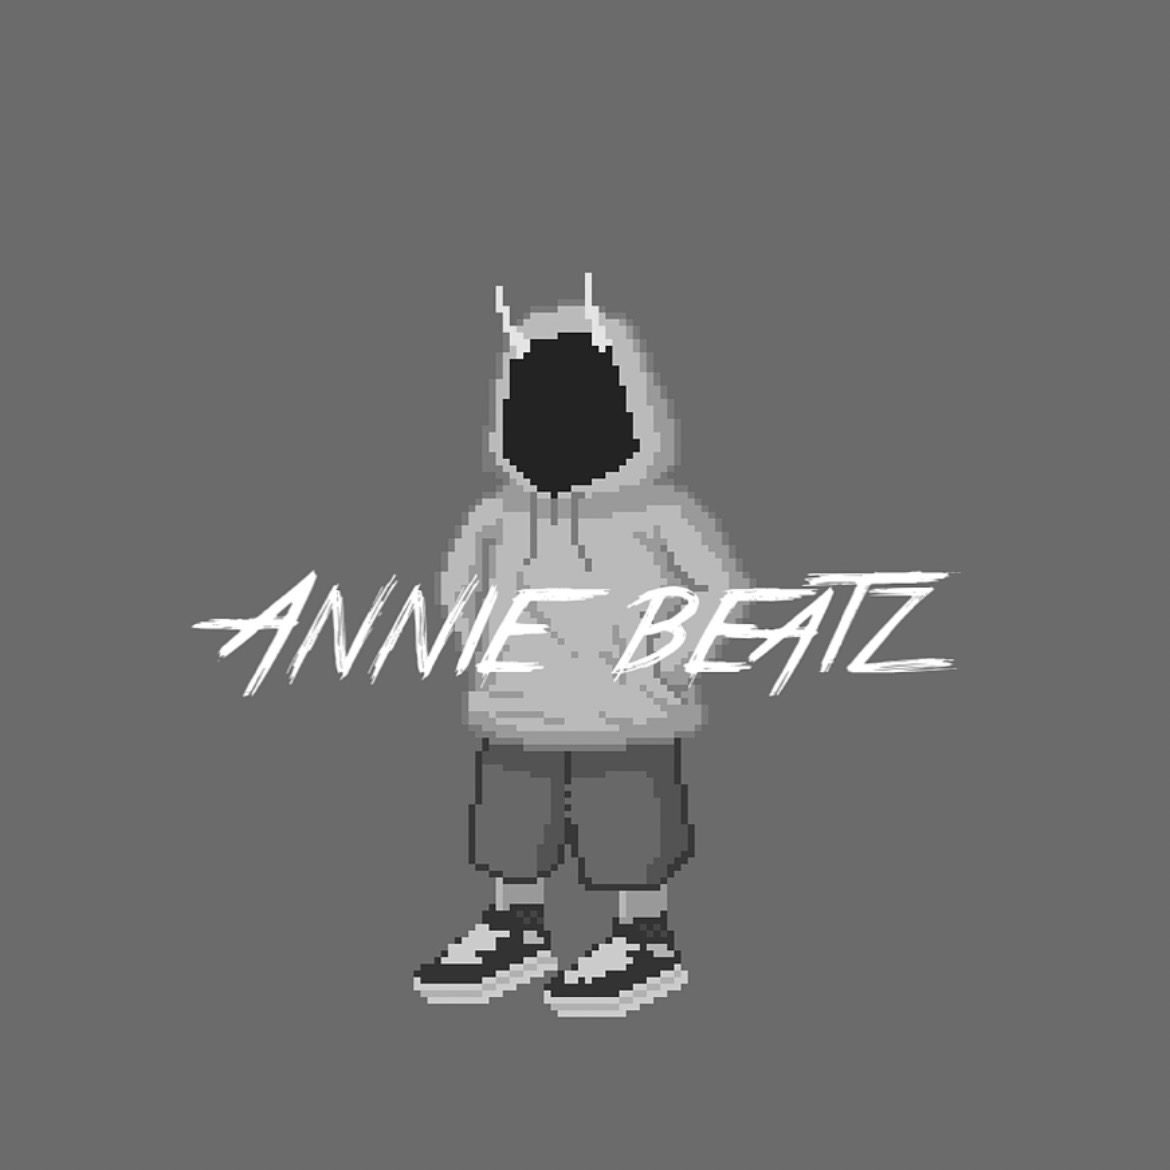 Annie beatz